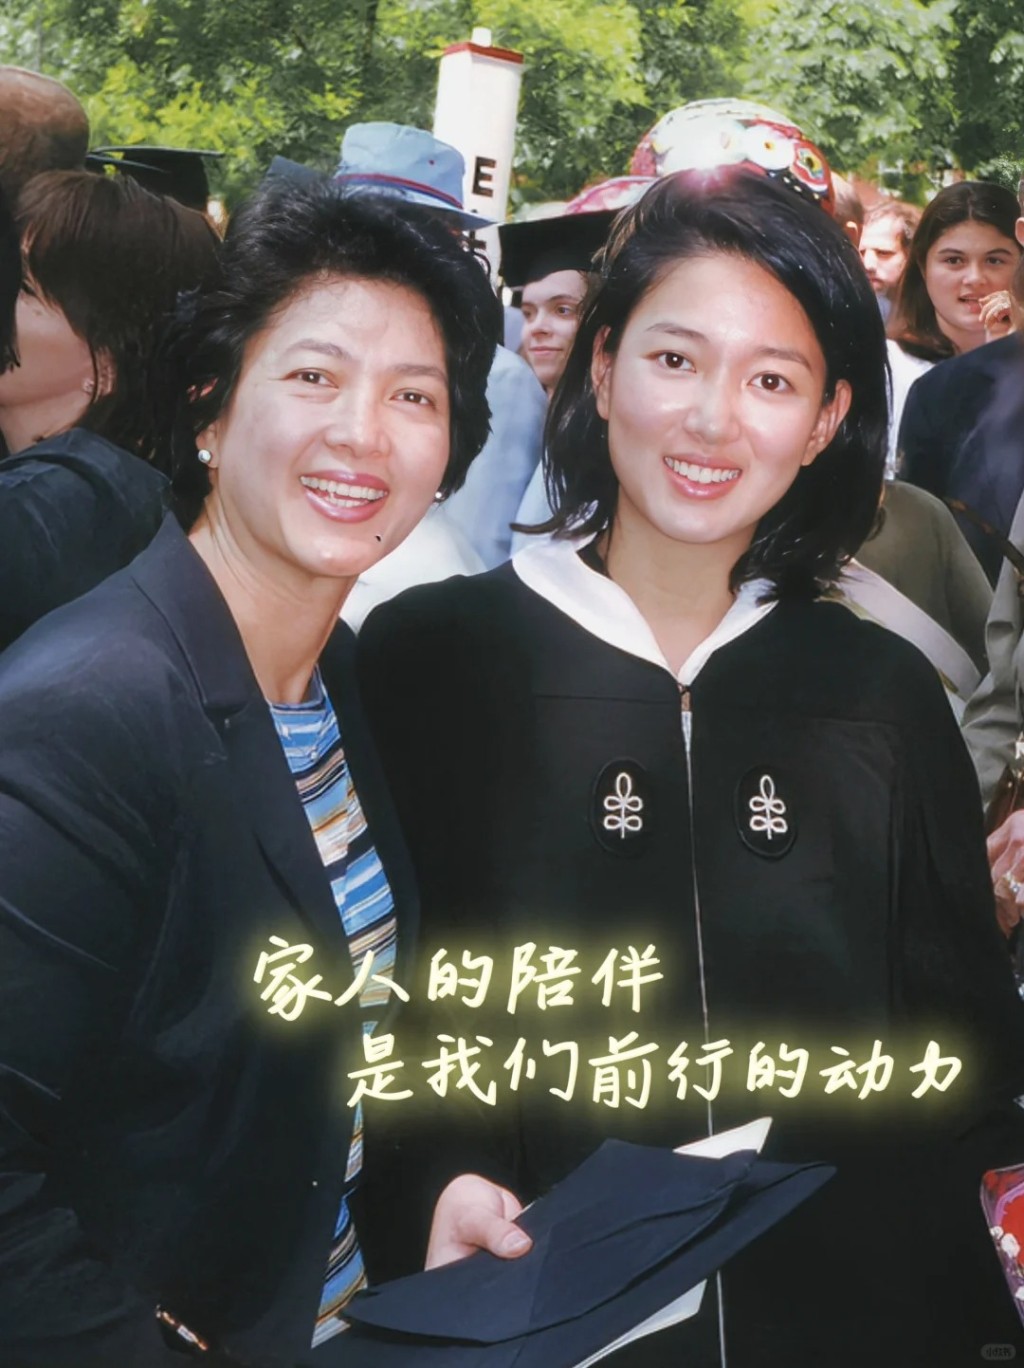 郭惠光是哈佛大學高材生。